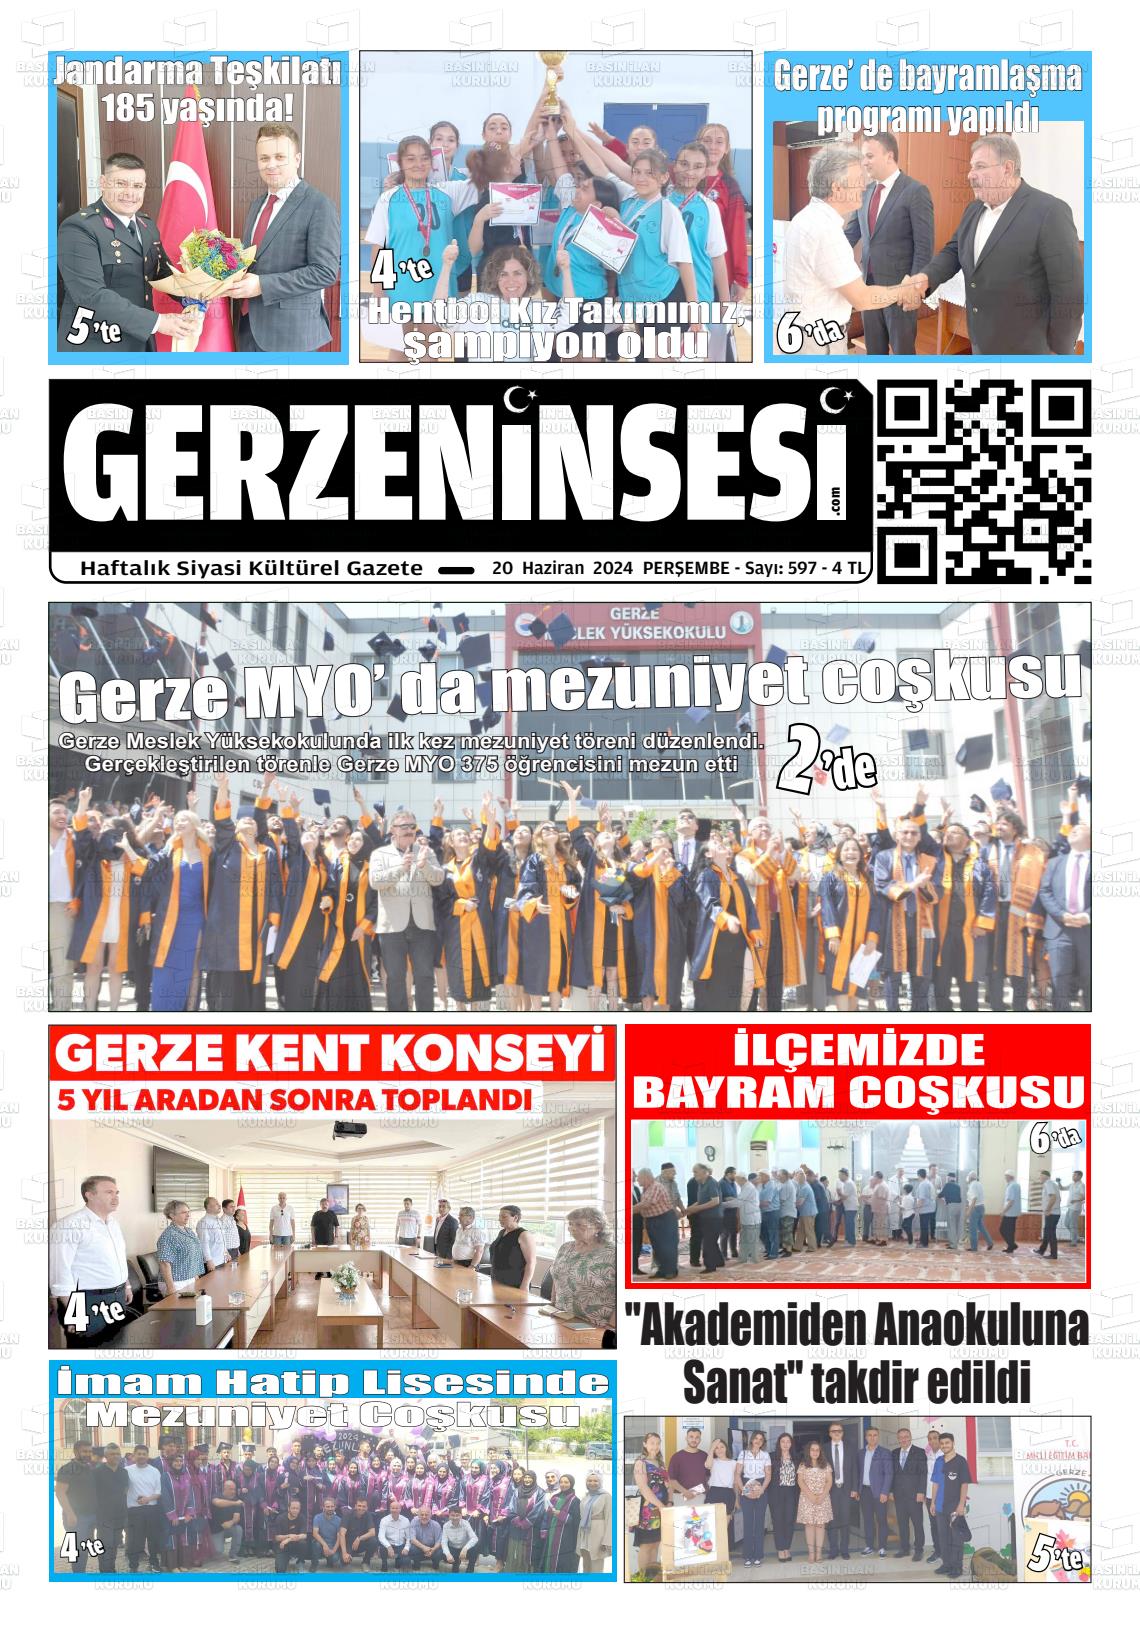 GERZE'NİN SESİ Gazetesi